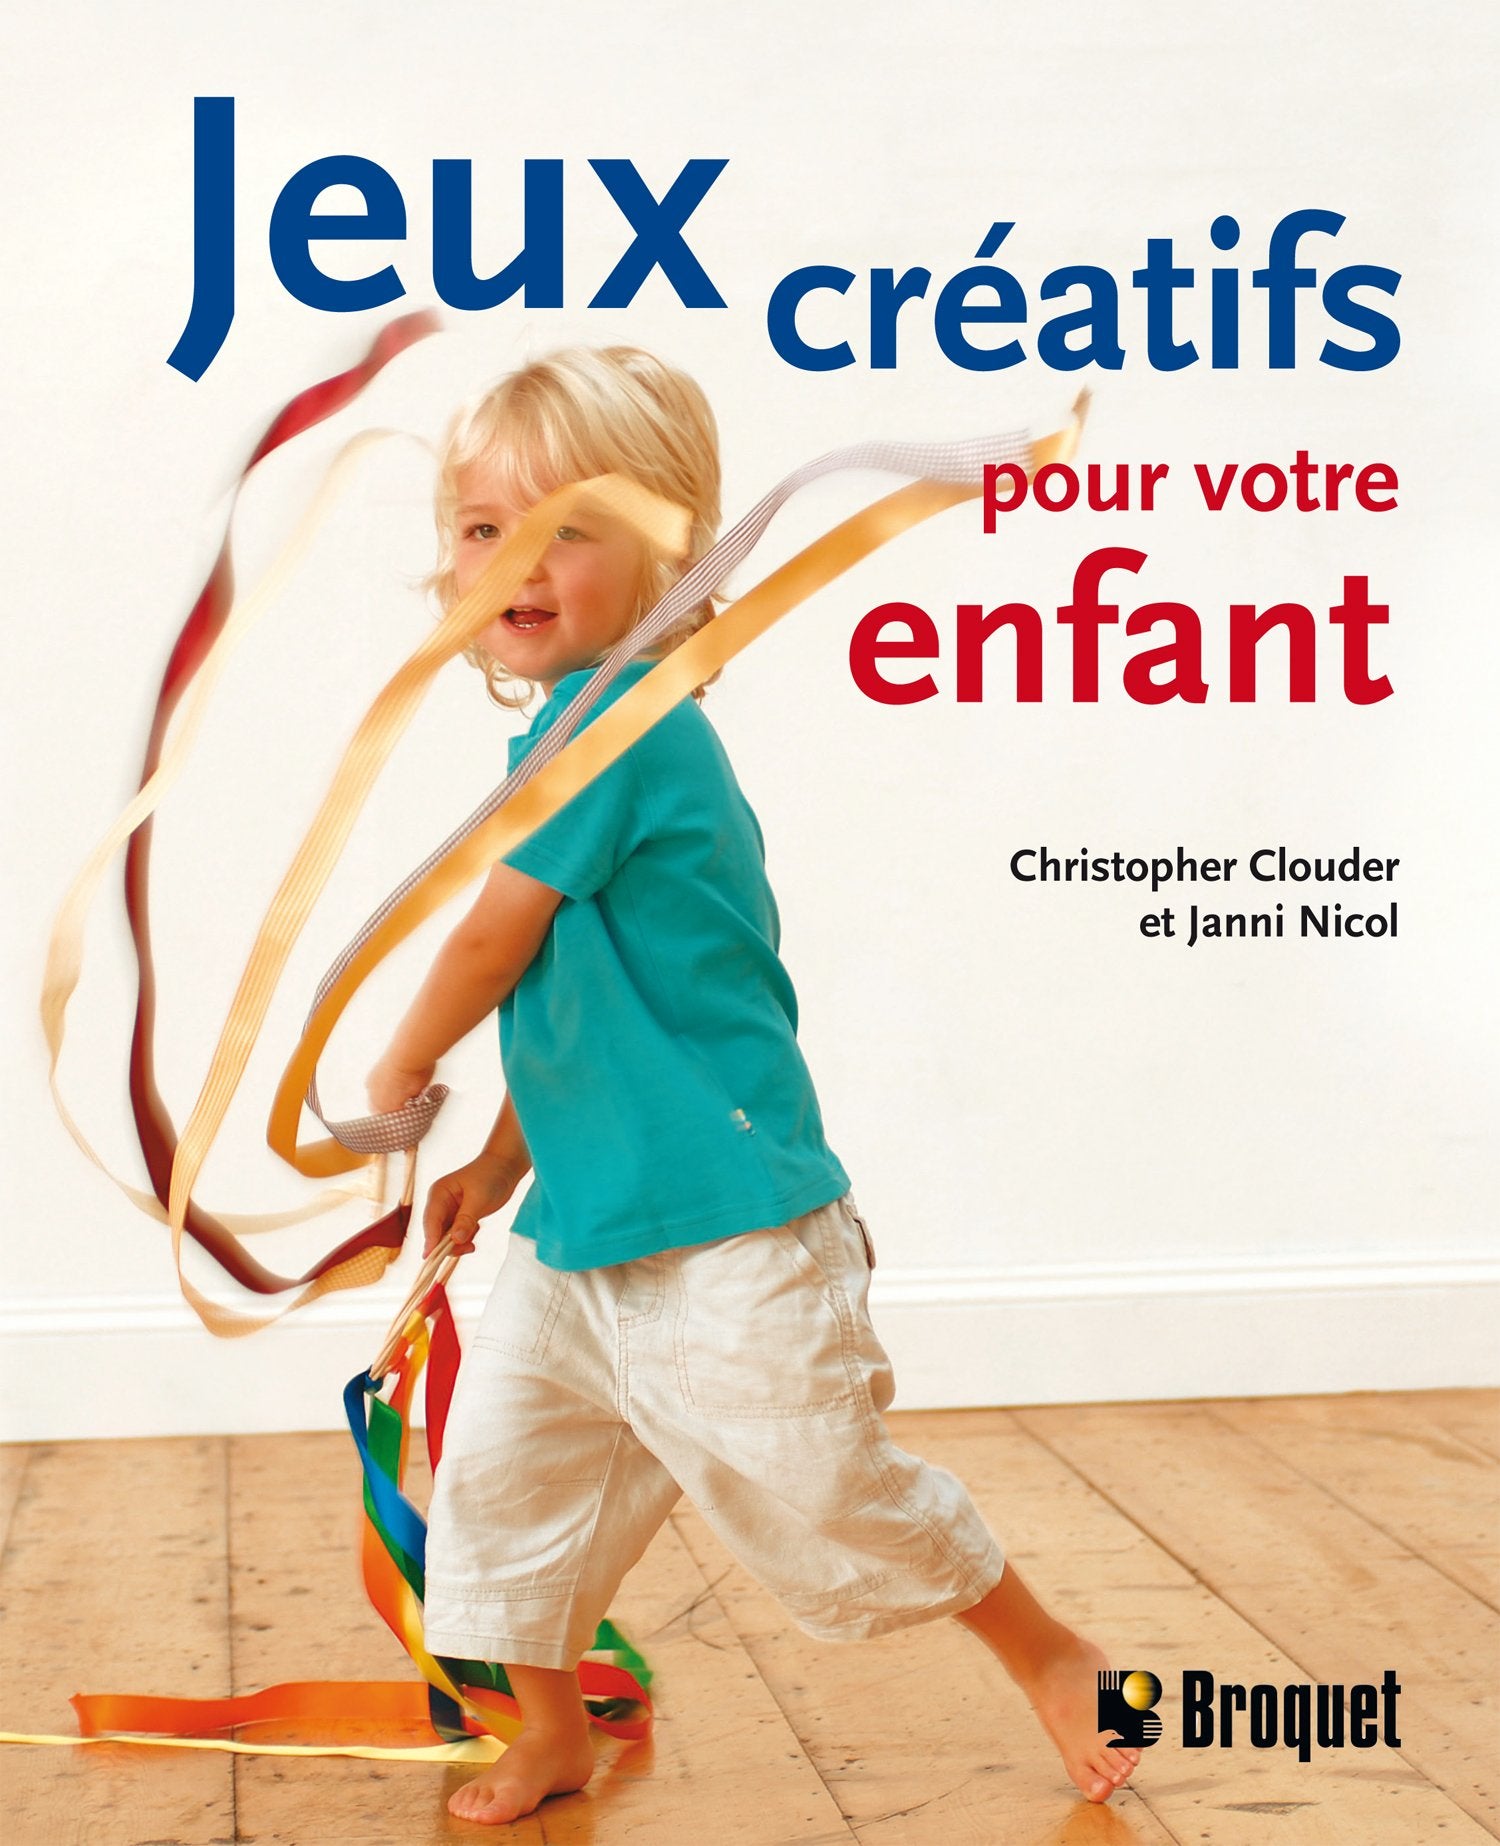 Jeux créatifs pour votre enfant - Christopher Clouder